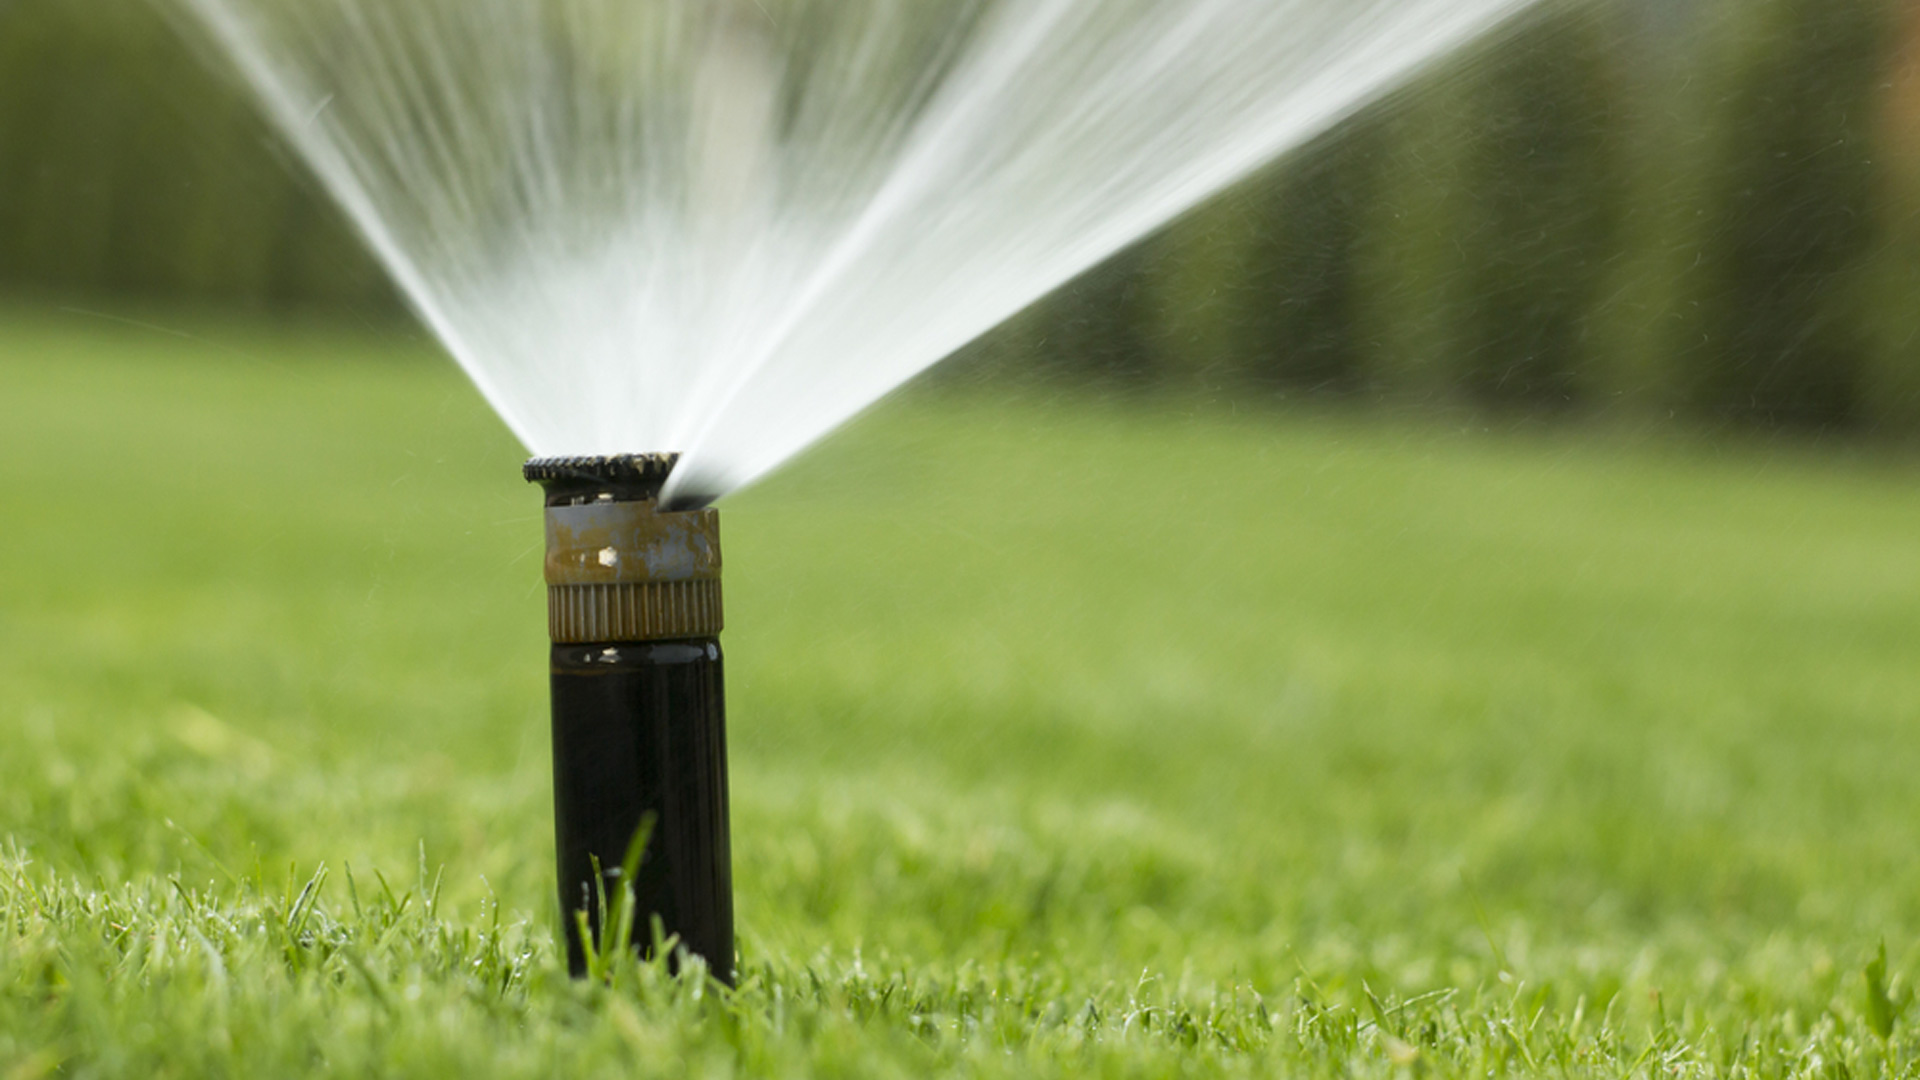 Sprinkler watering a lawn in Waco, TX.